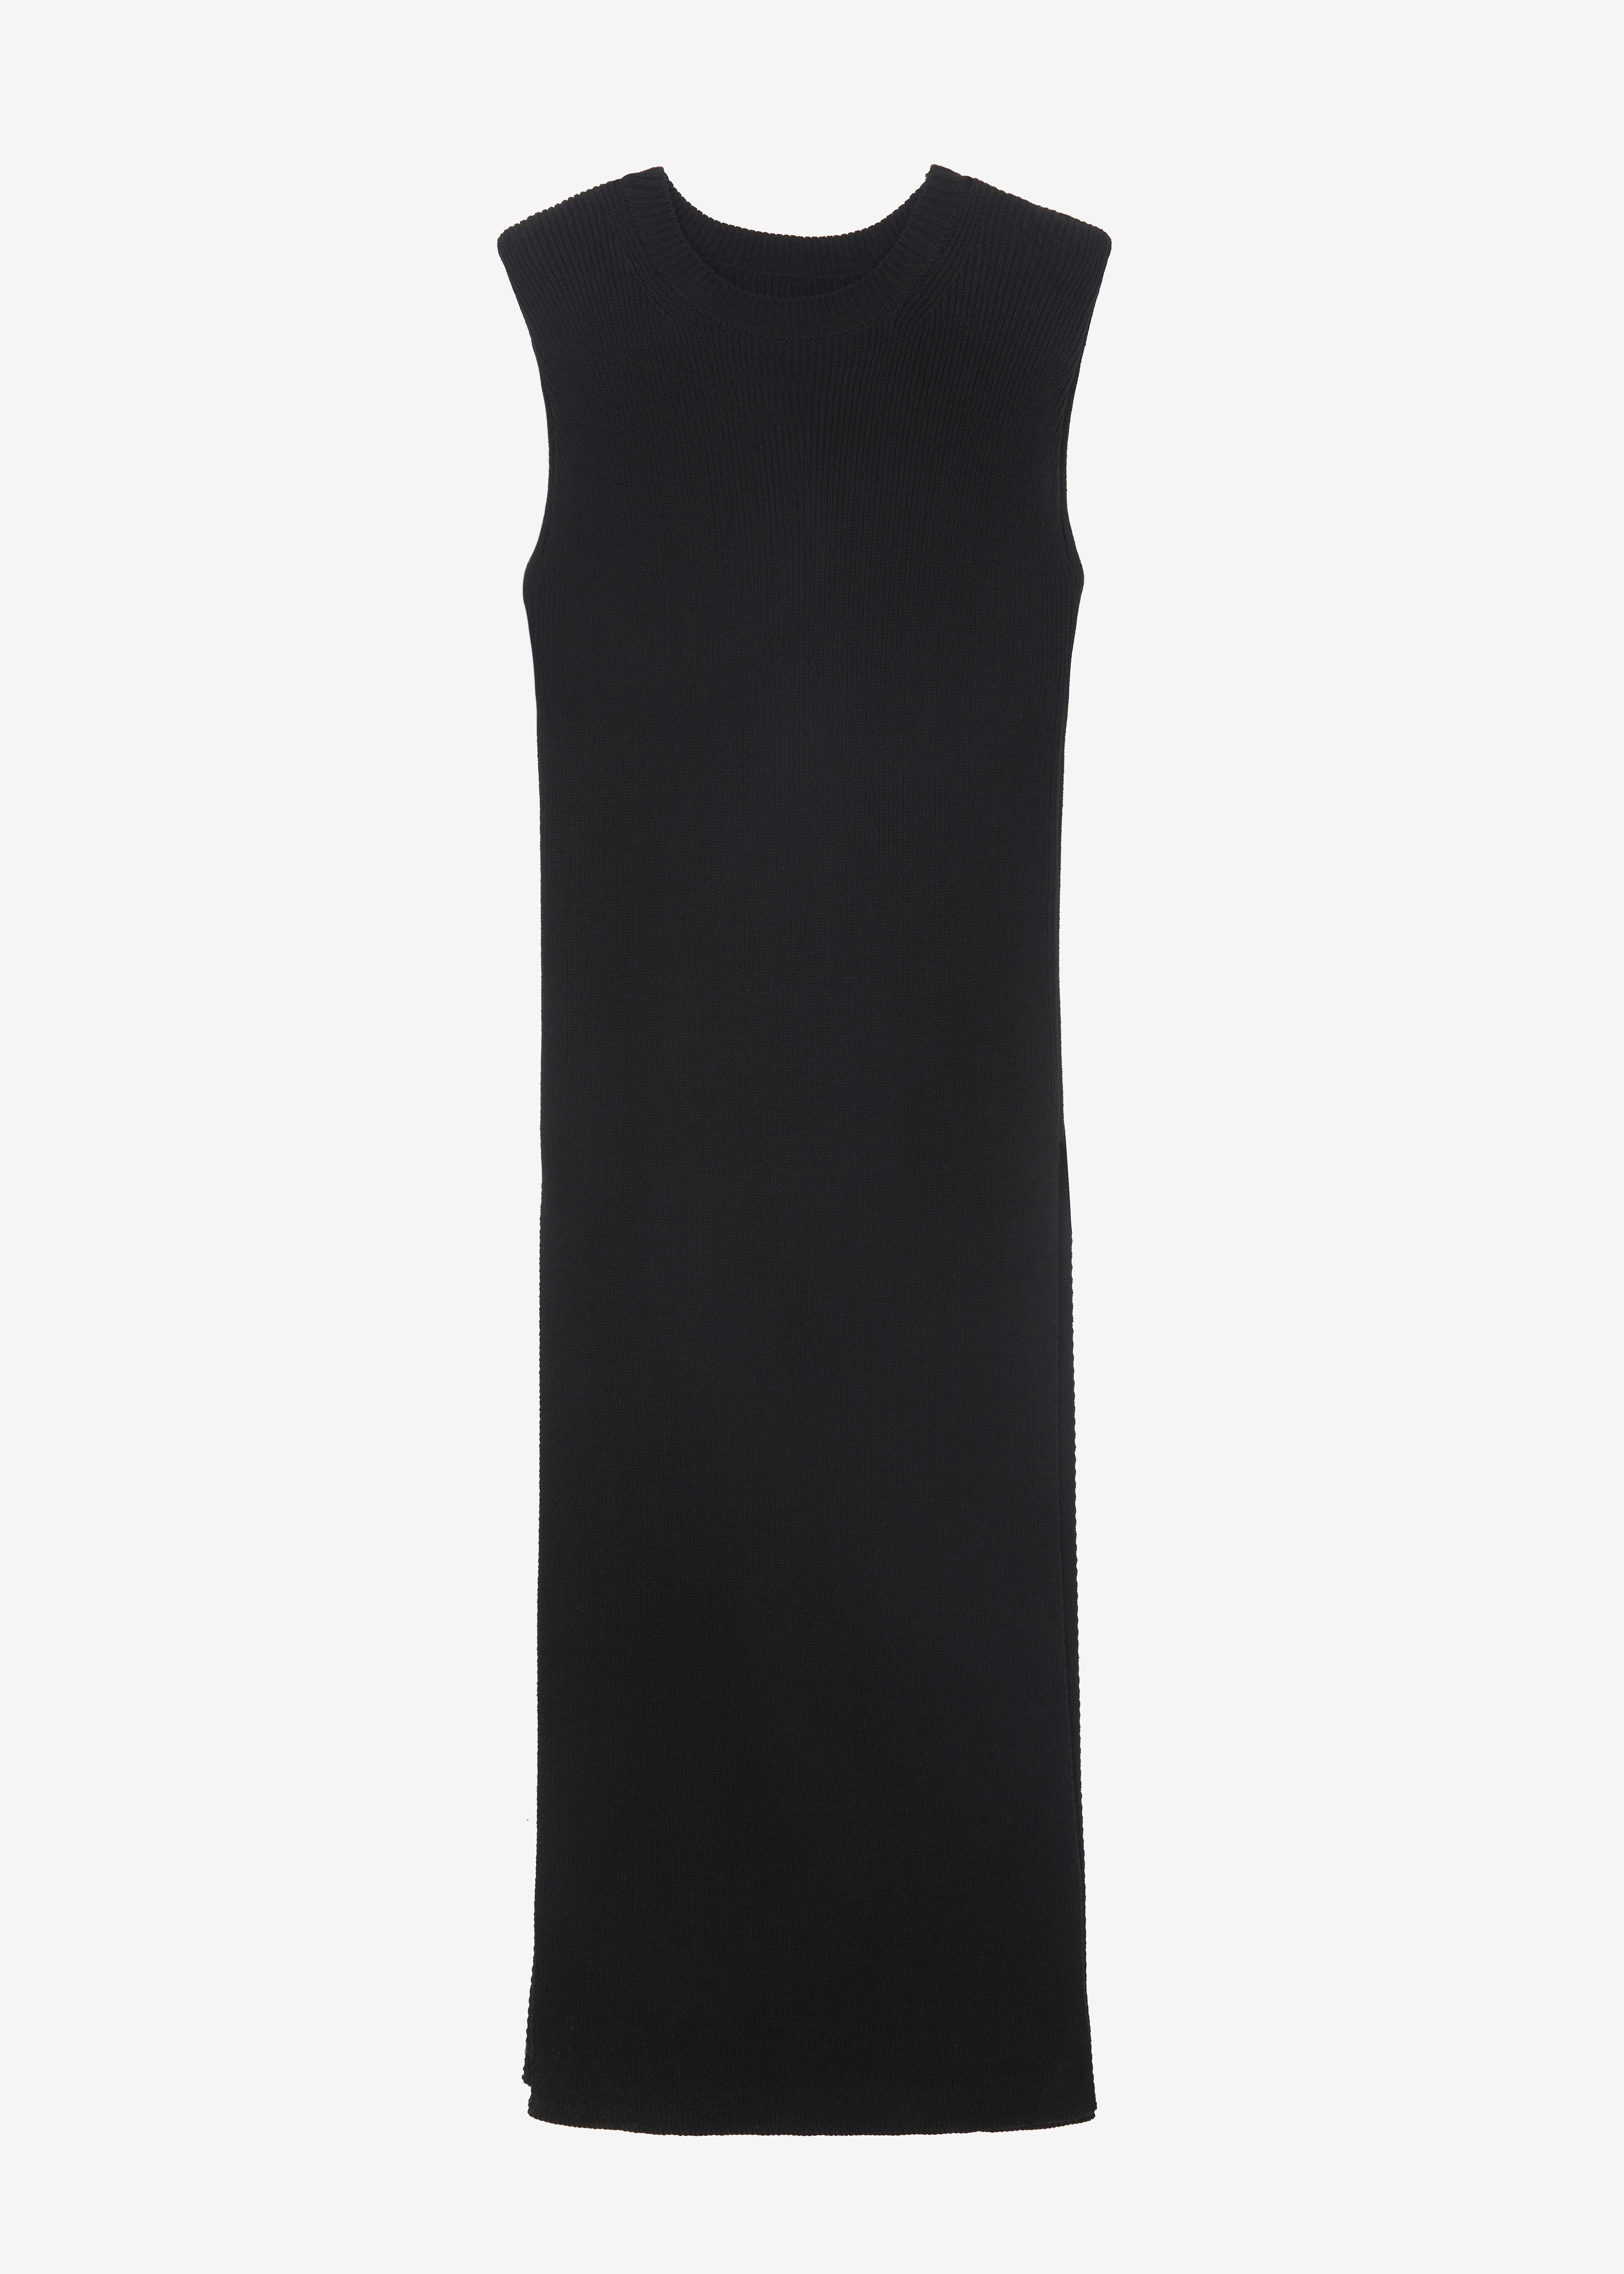 Wren Sleeveless Knit Dress - Black - 12